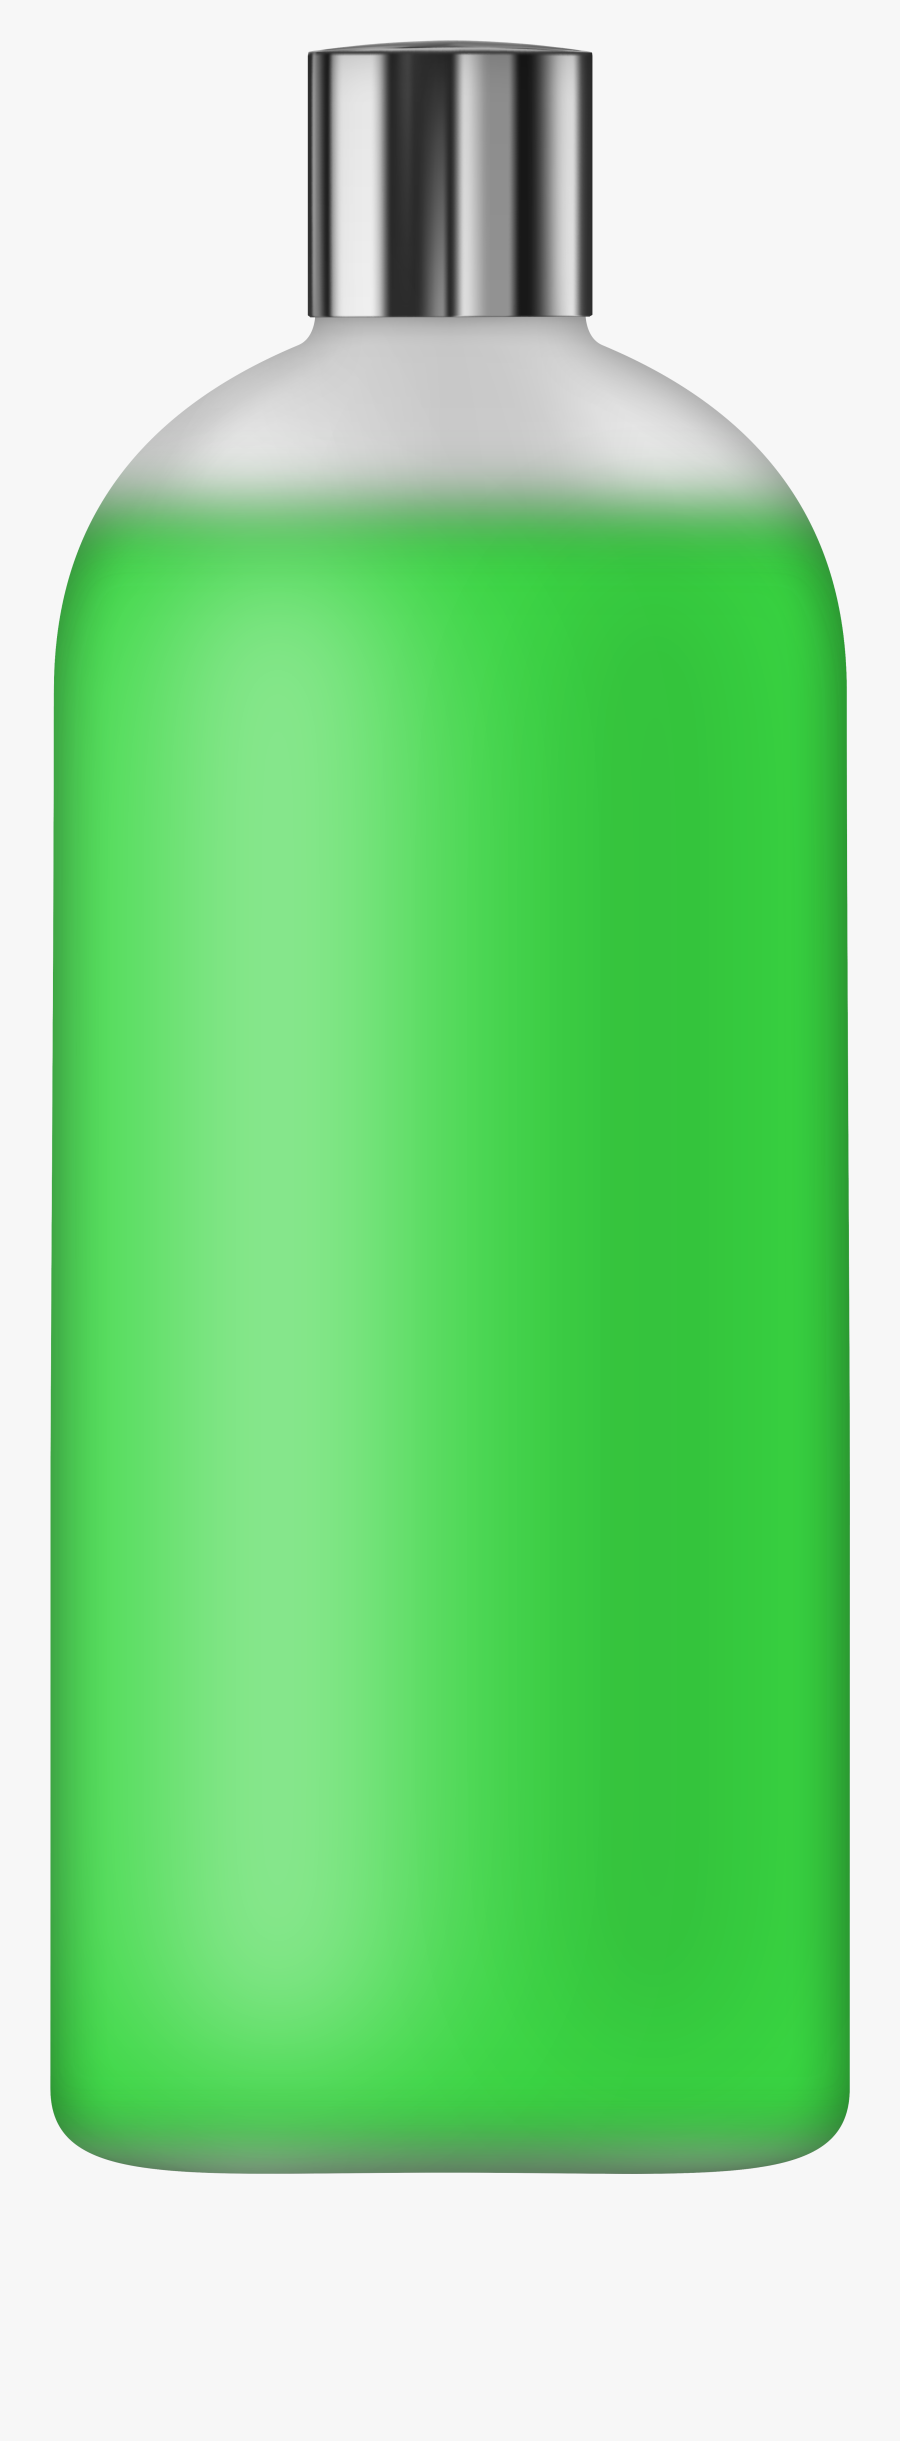 Liquid Soap Green Png Clip Art - Plastic, Transparent Clipart